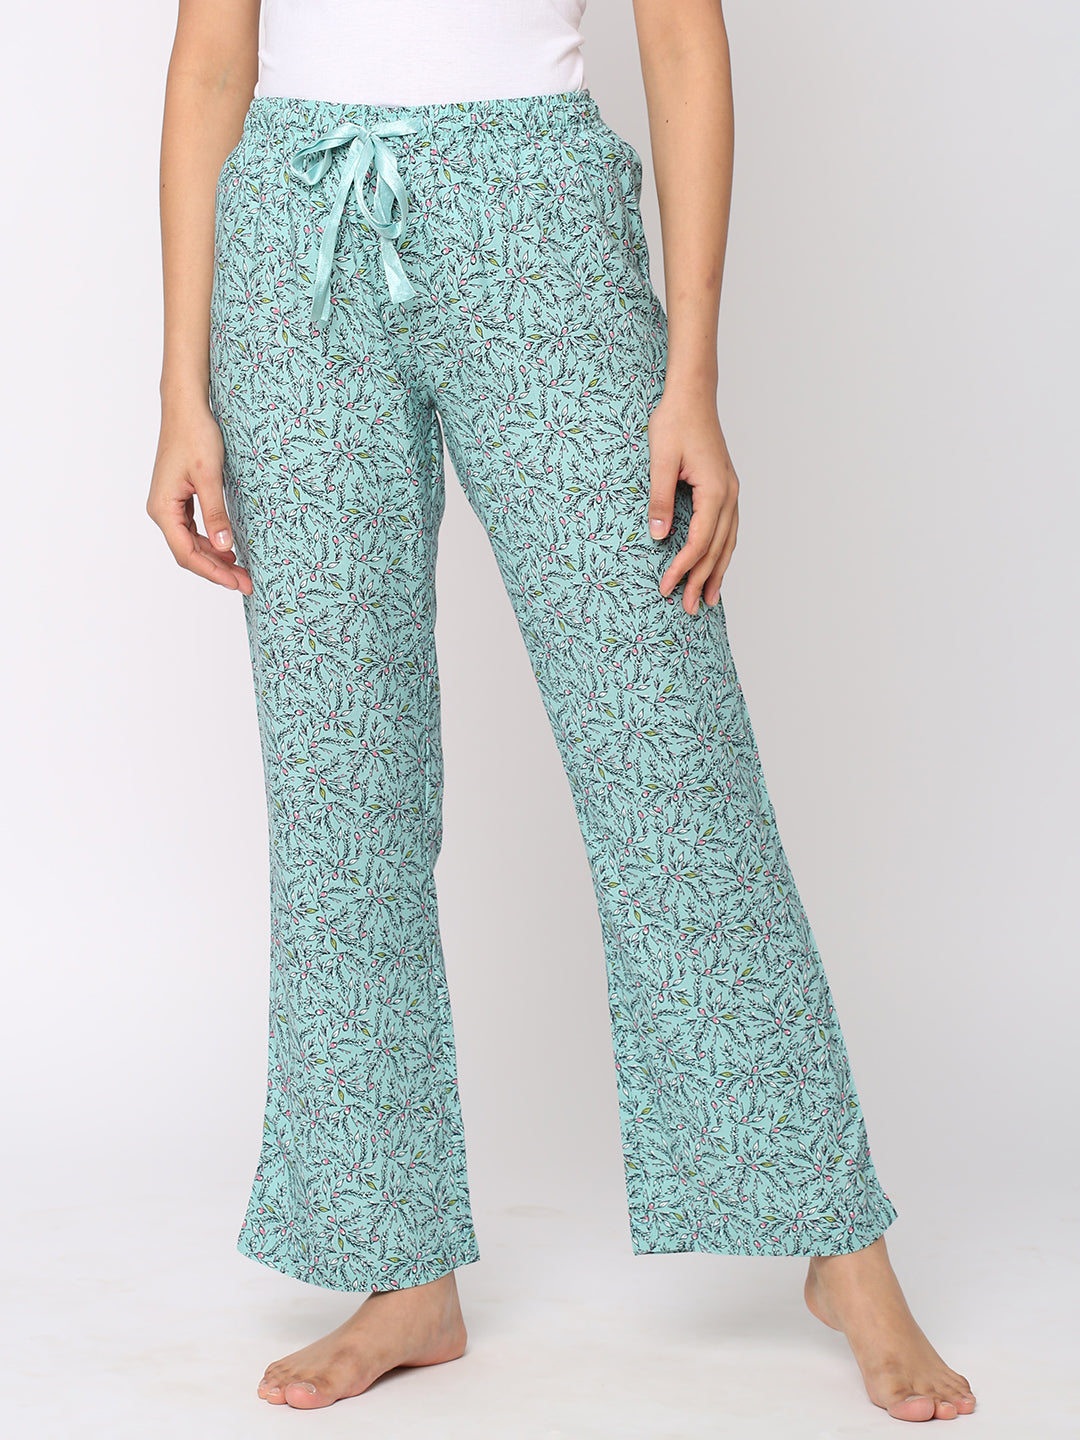 Pyjamas Pants Online | Cotton Pyjamas For Women | Shararat